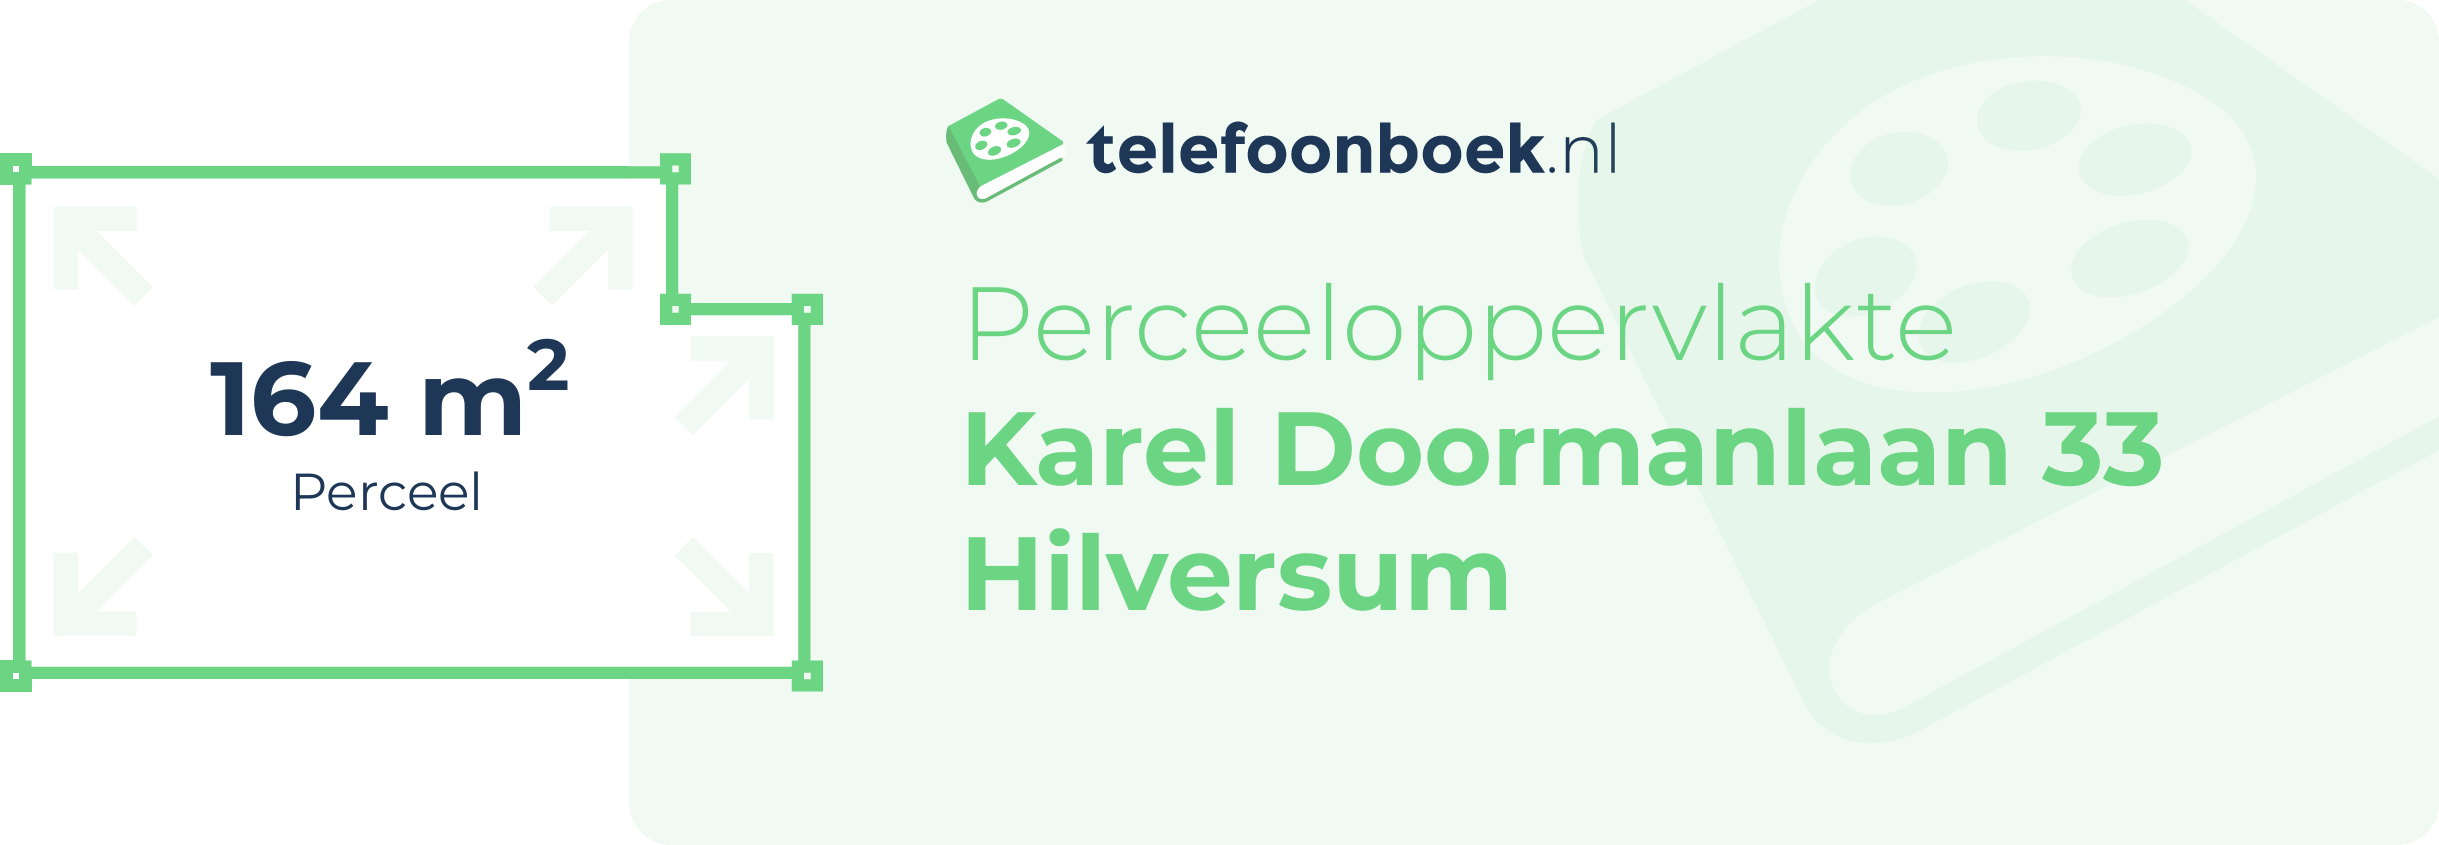 Perceeloppervlakte Karel Doormanlaan 33 Hilversum